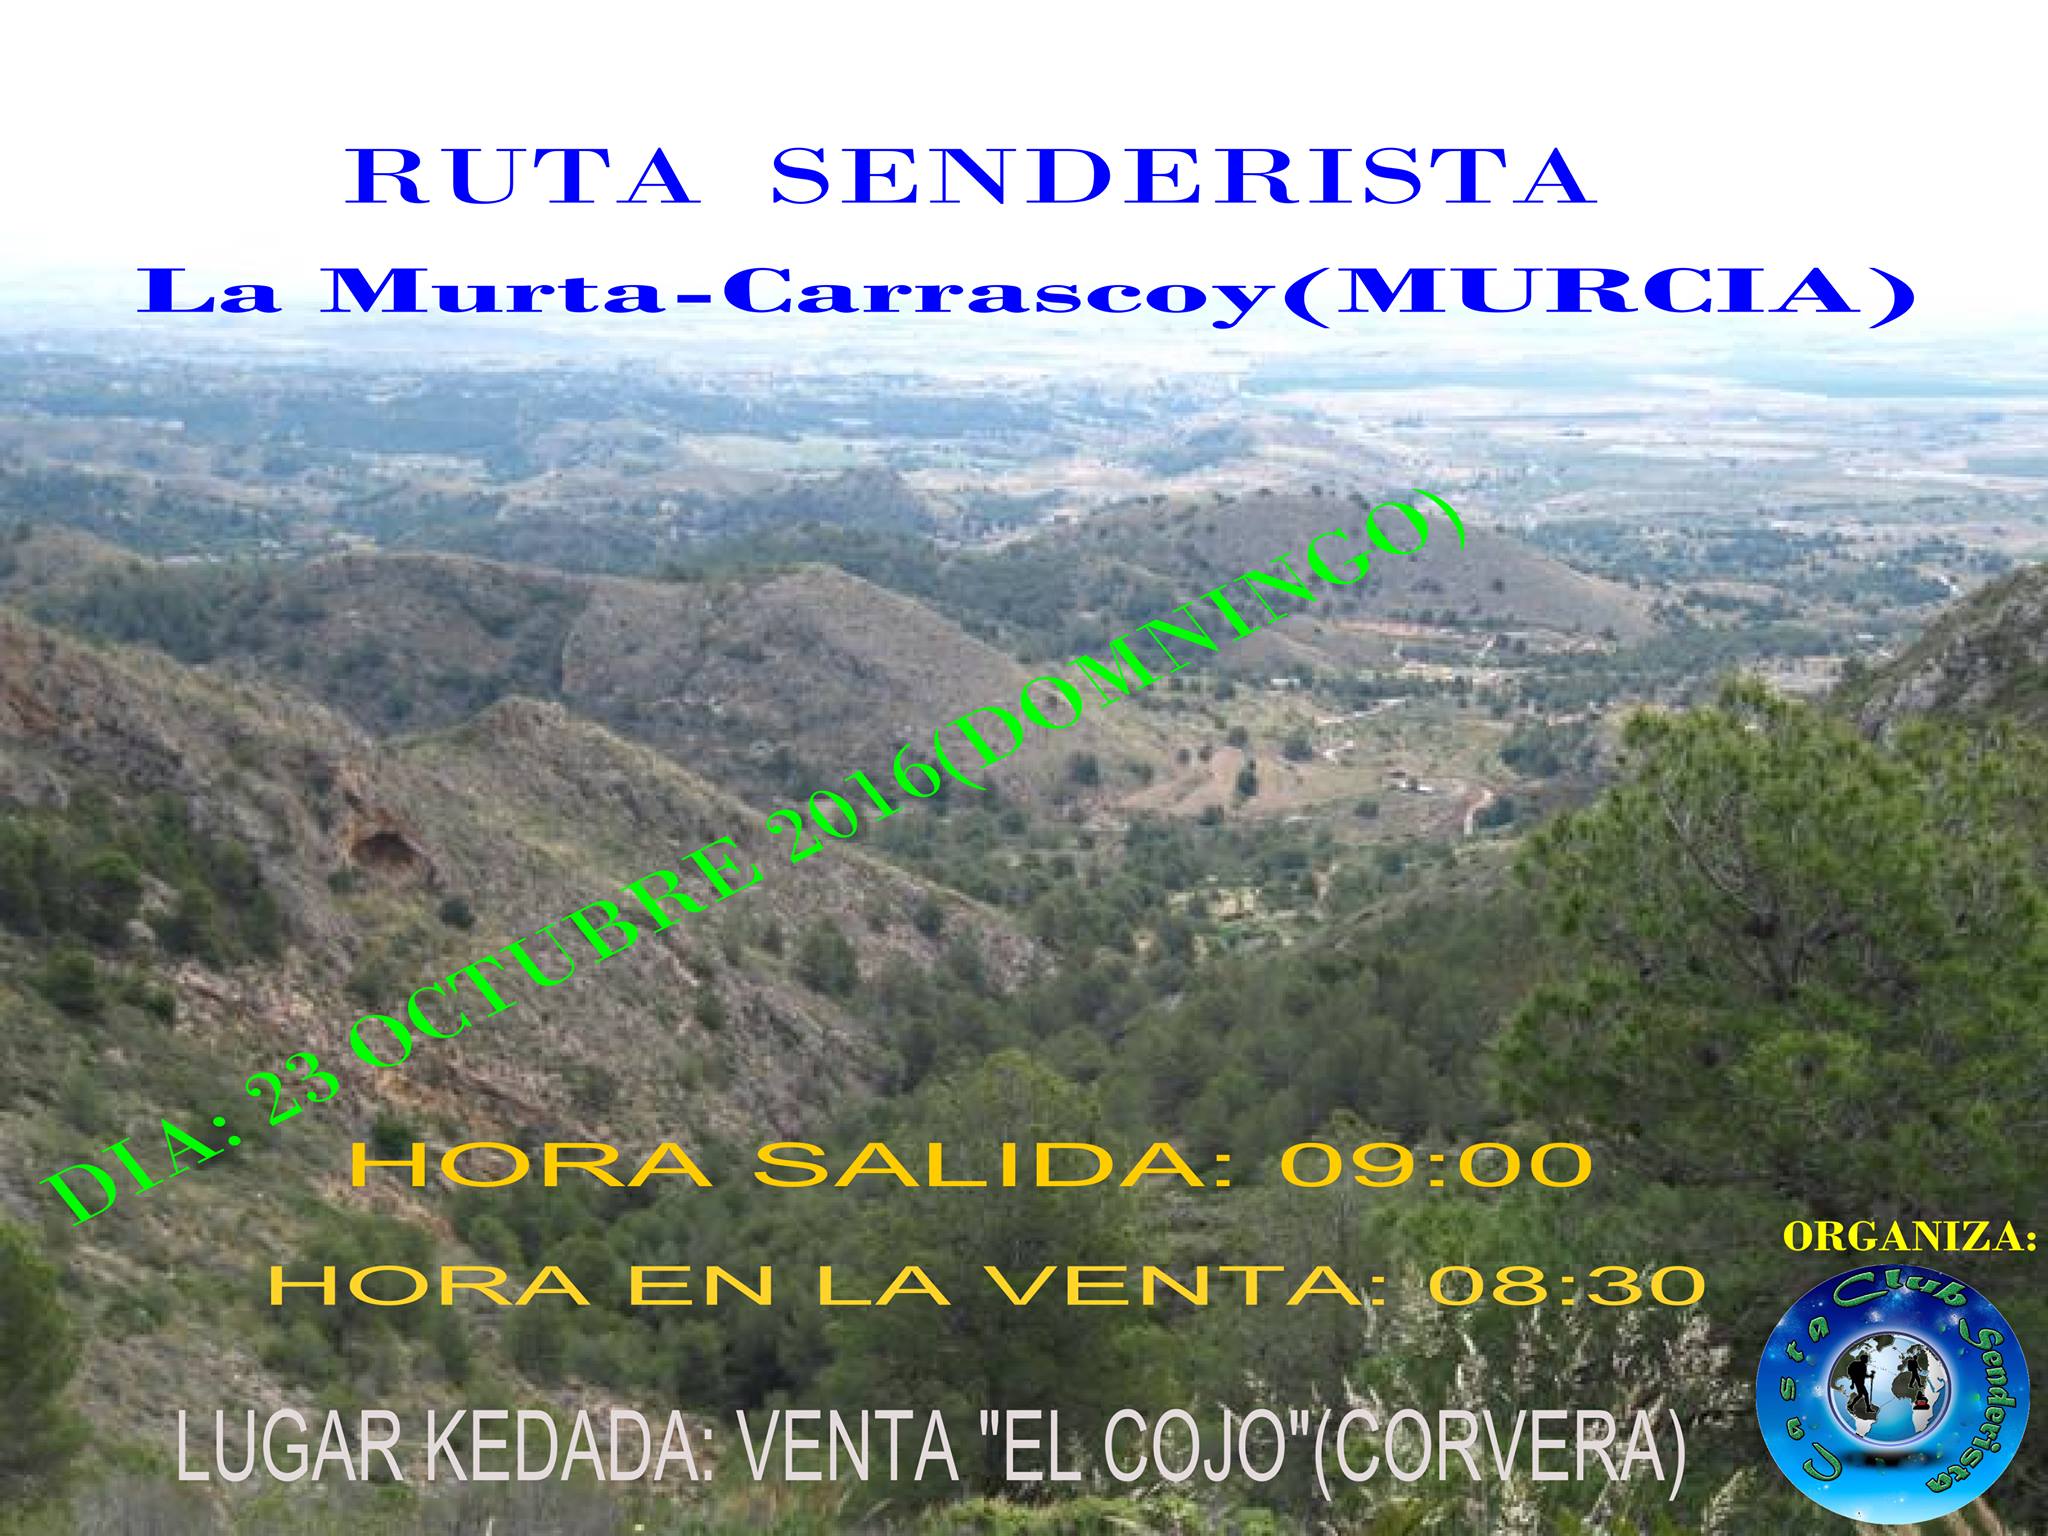 Ruta Senderista La Murta-Carrascoy, con el Club Senderista Casta.